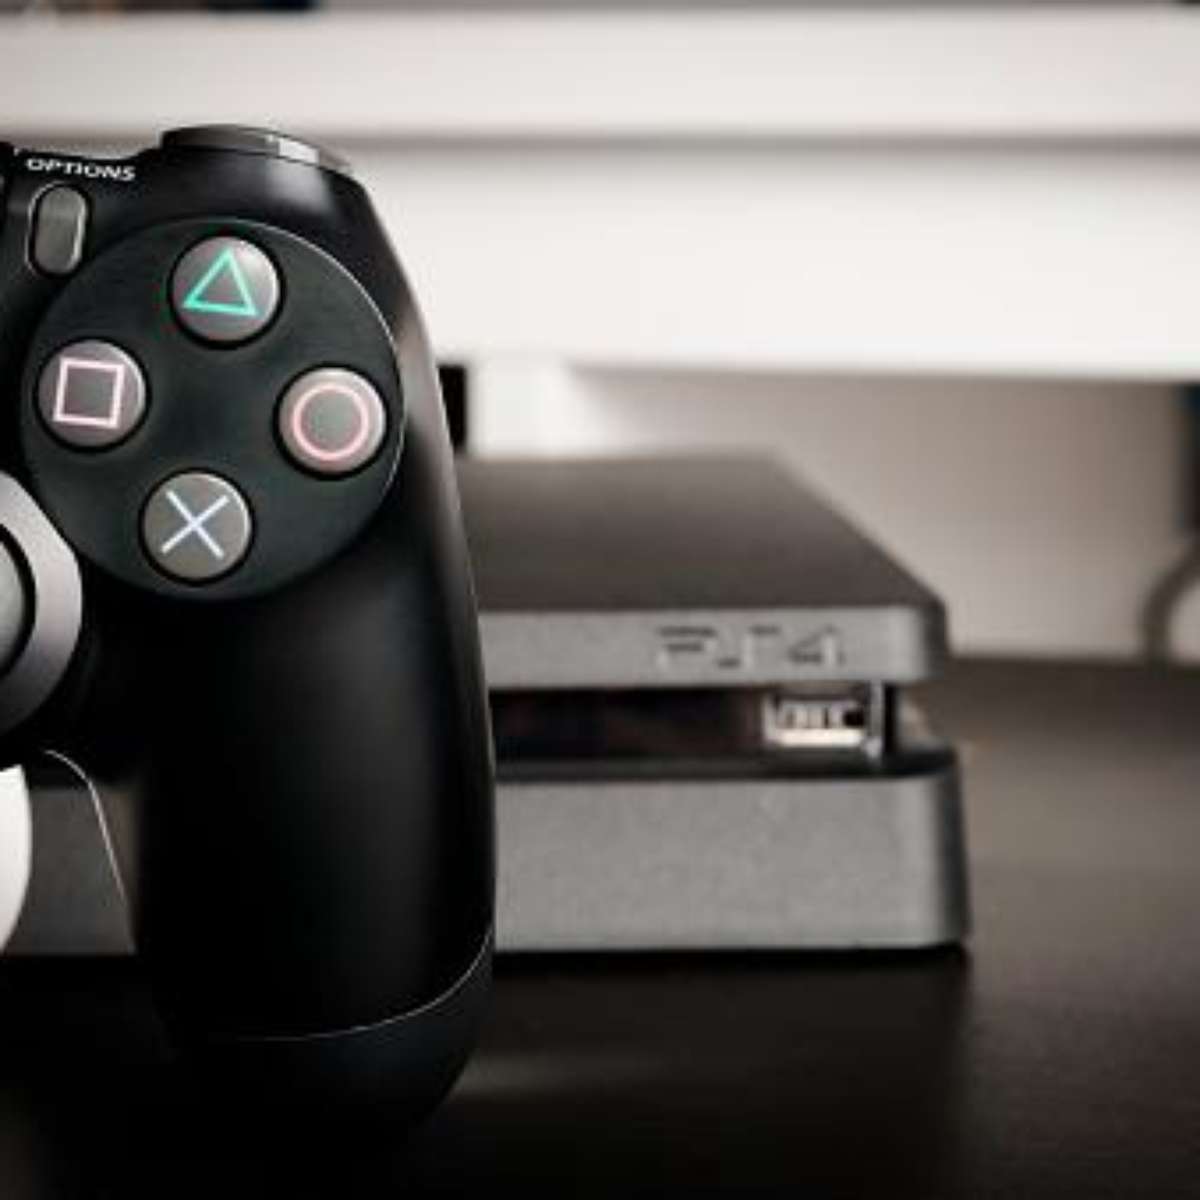 PS5: veja lista de jogos disponíveis no lançamento do console, esports